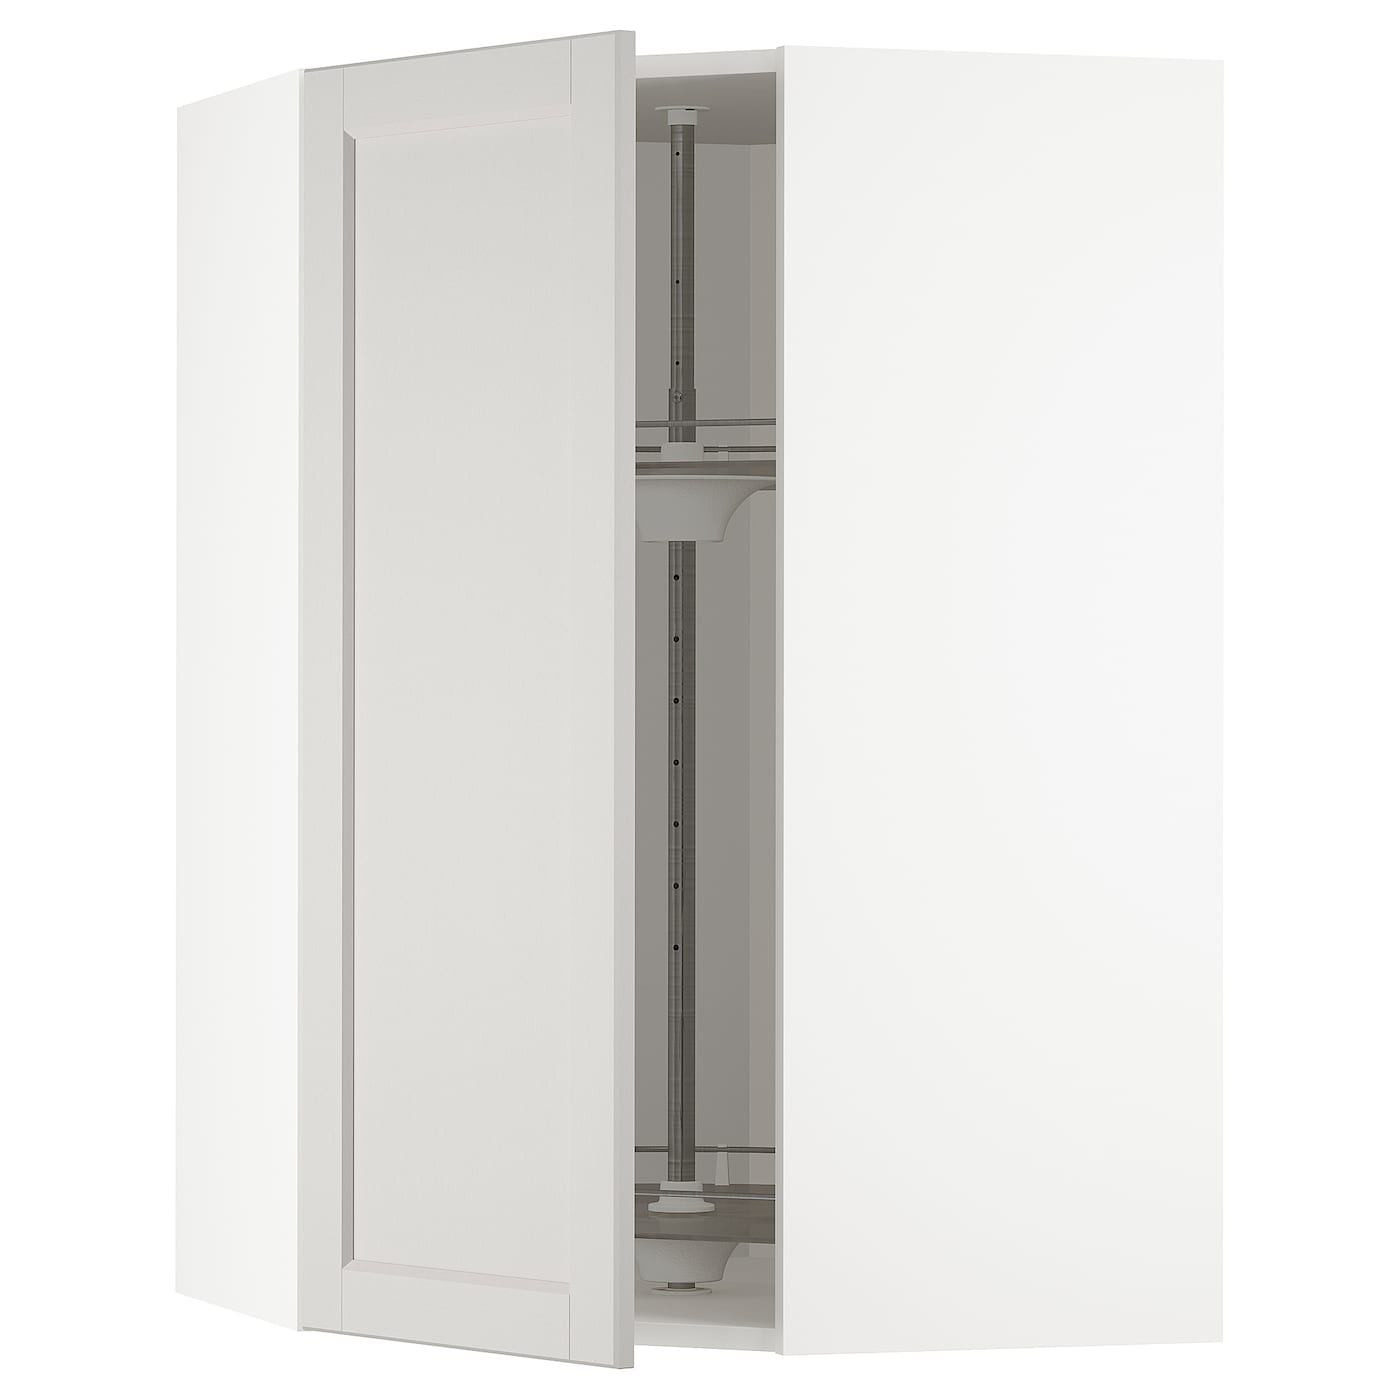 Угловой навесной шкаф с каруселью - METOD  IKEA/  МЕТОД ИКЕА, 100х68 см, белый/светло-серый